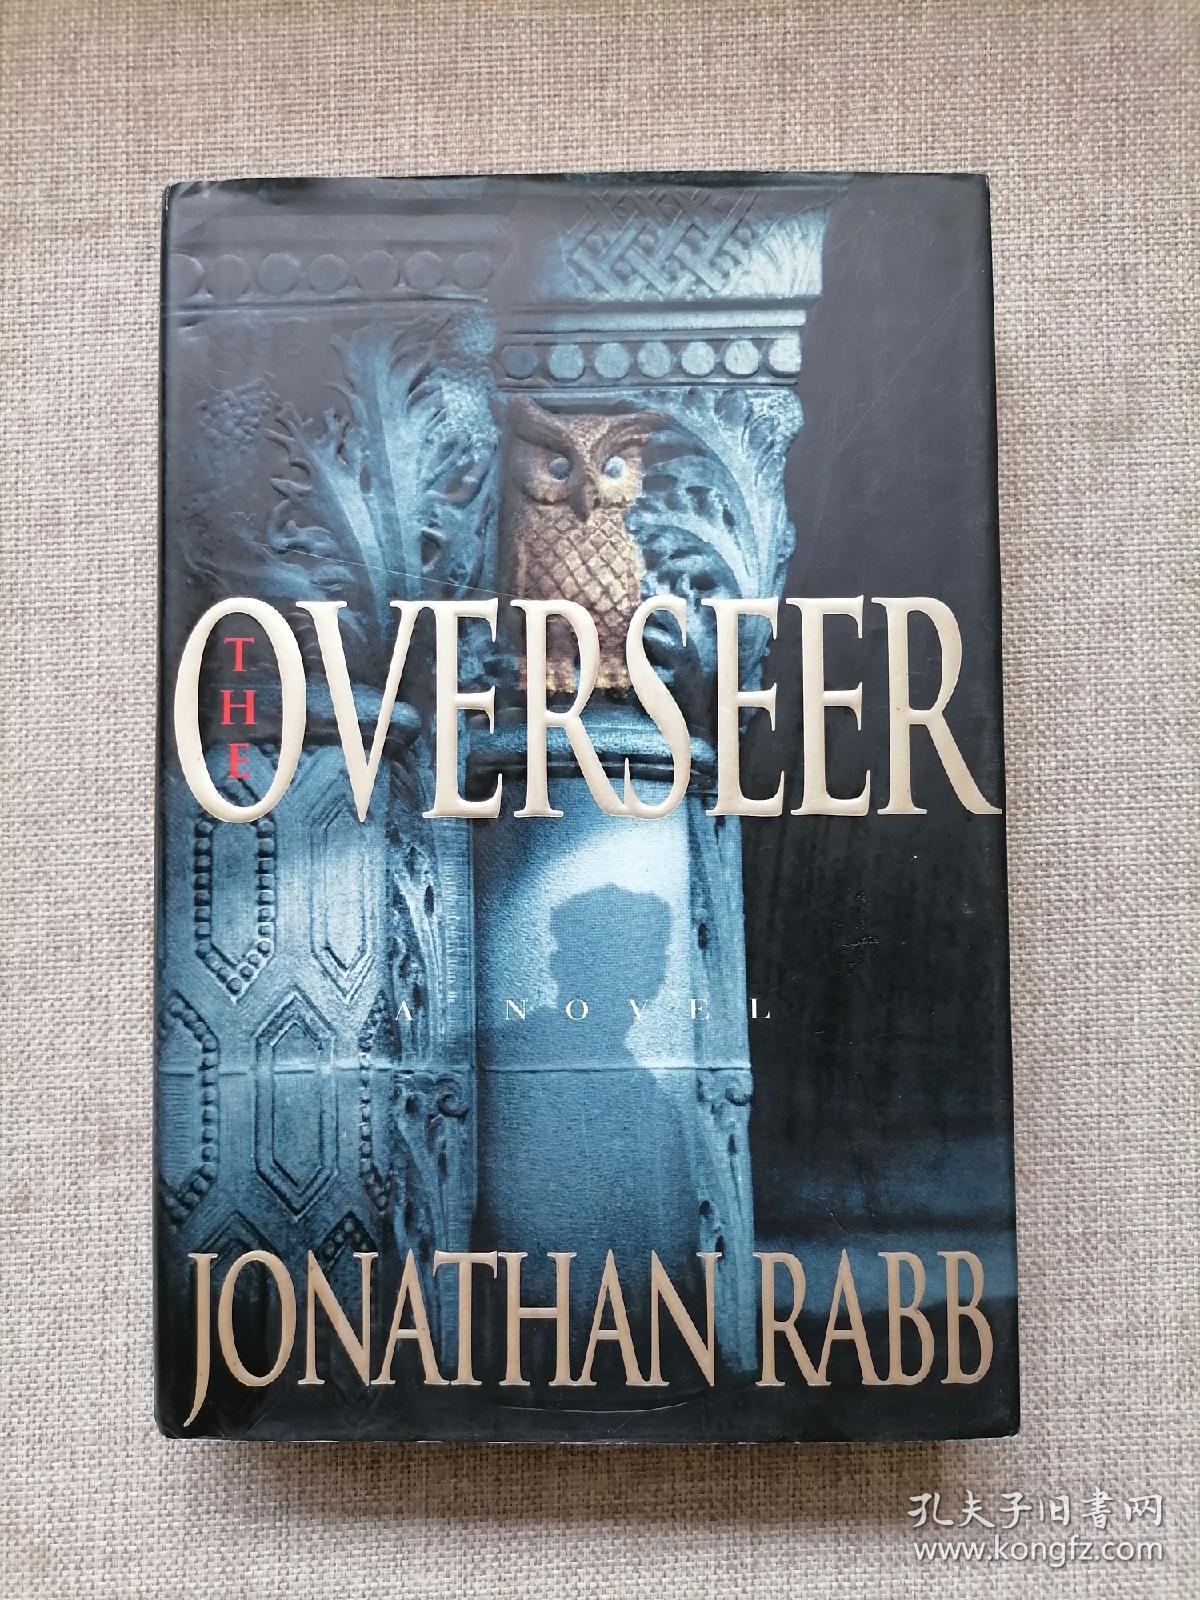 THE OVERSEER JONATHAN RABB